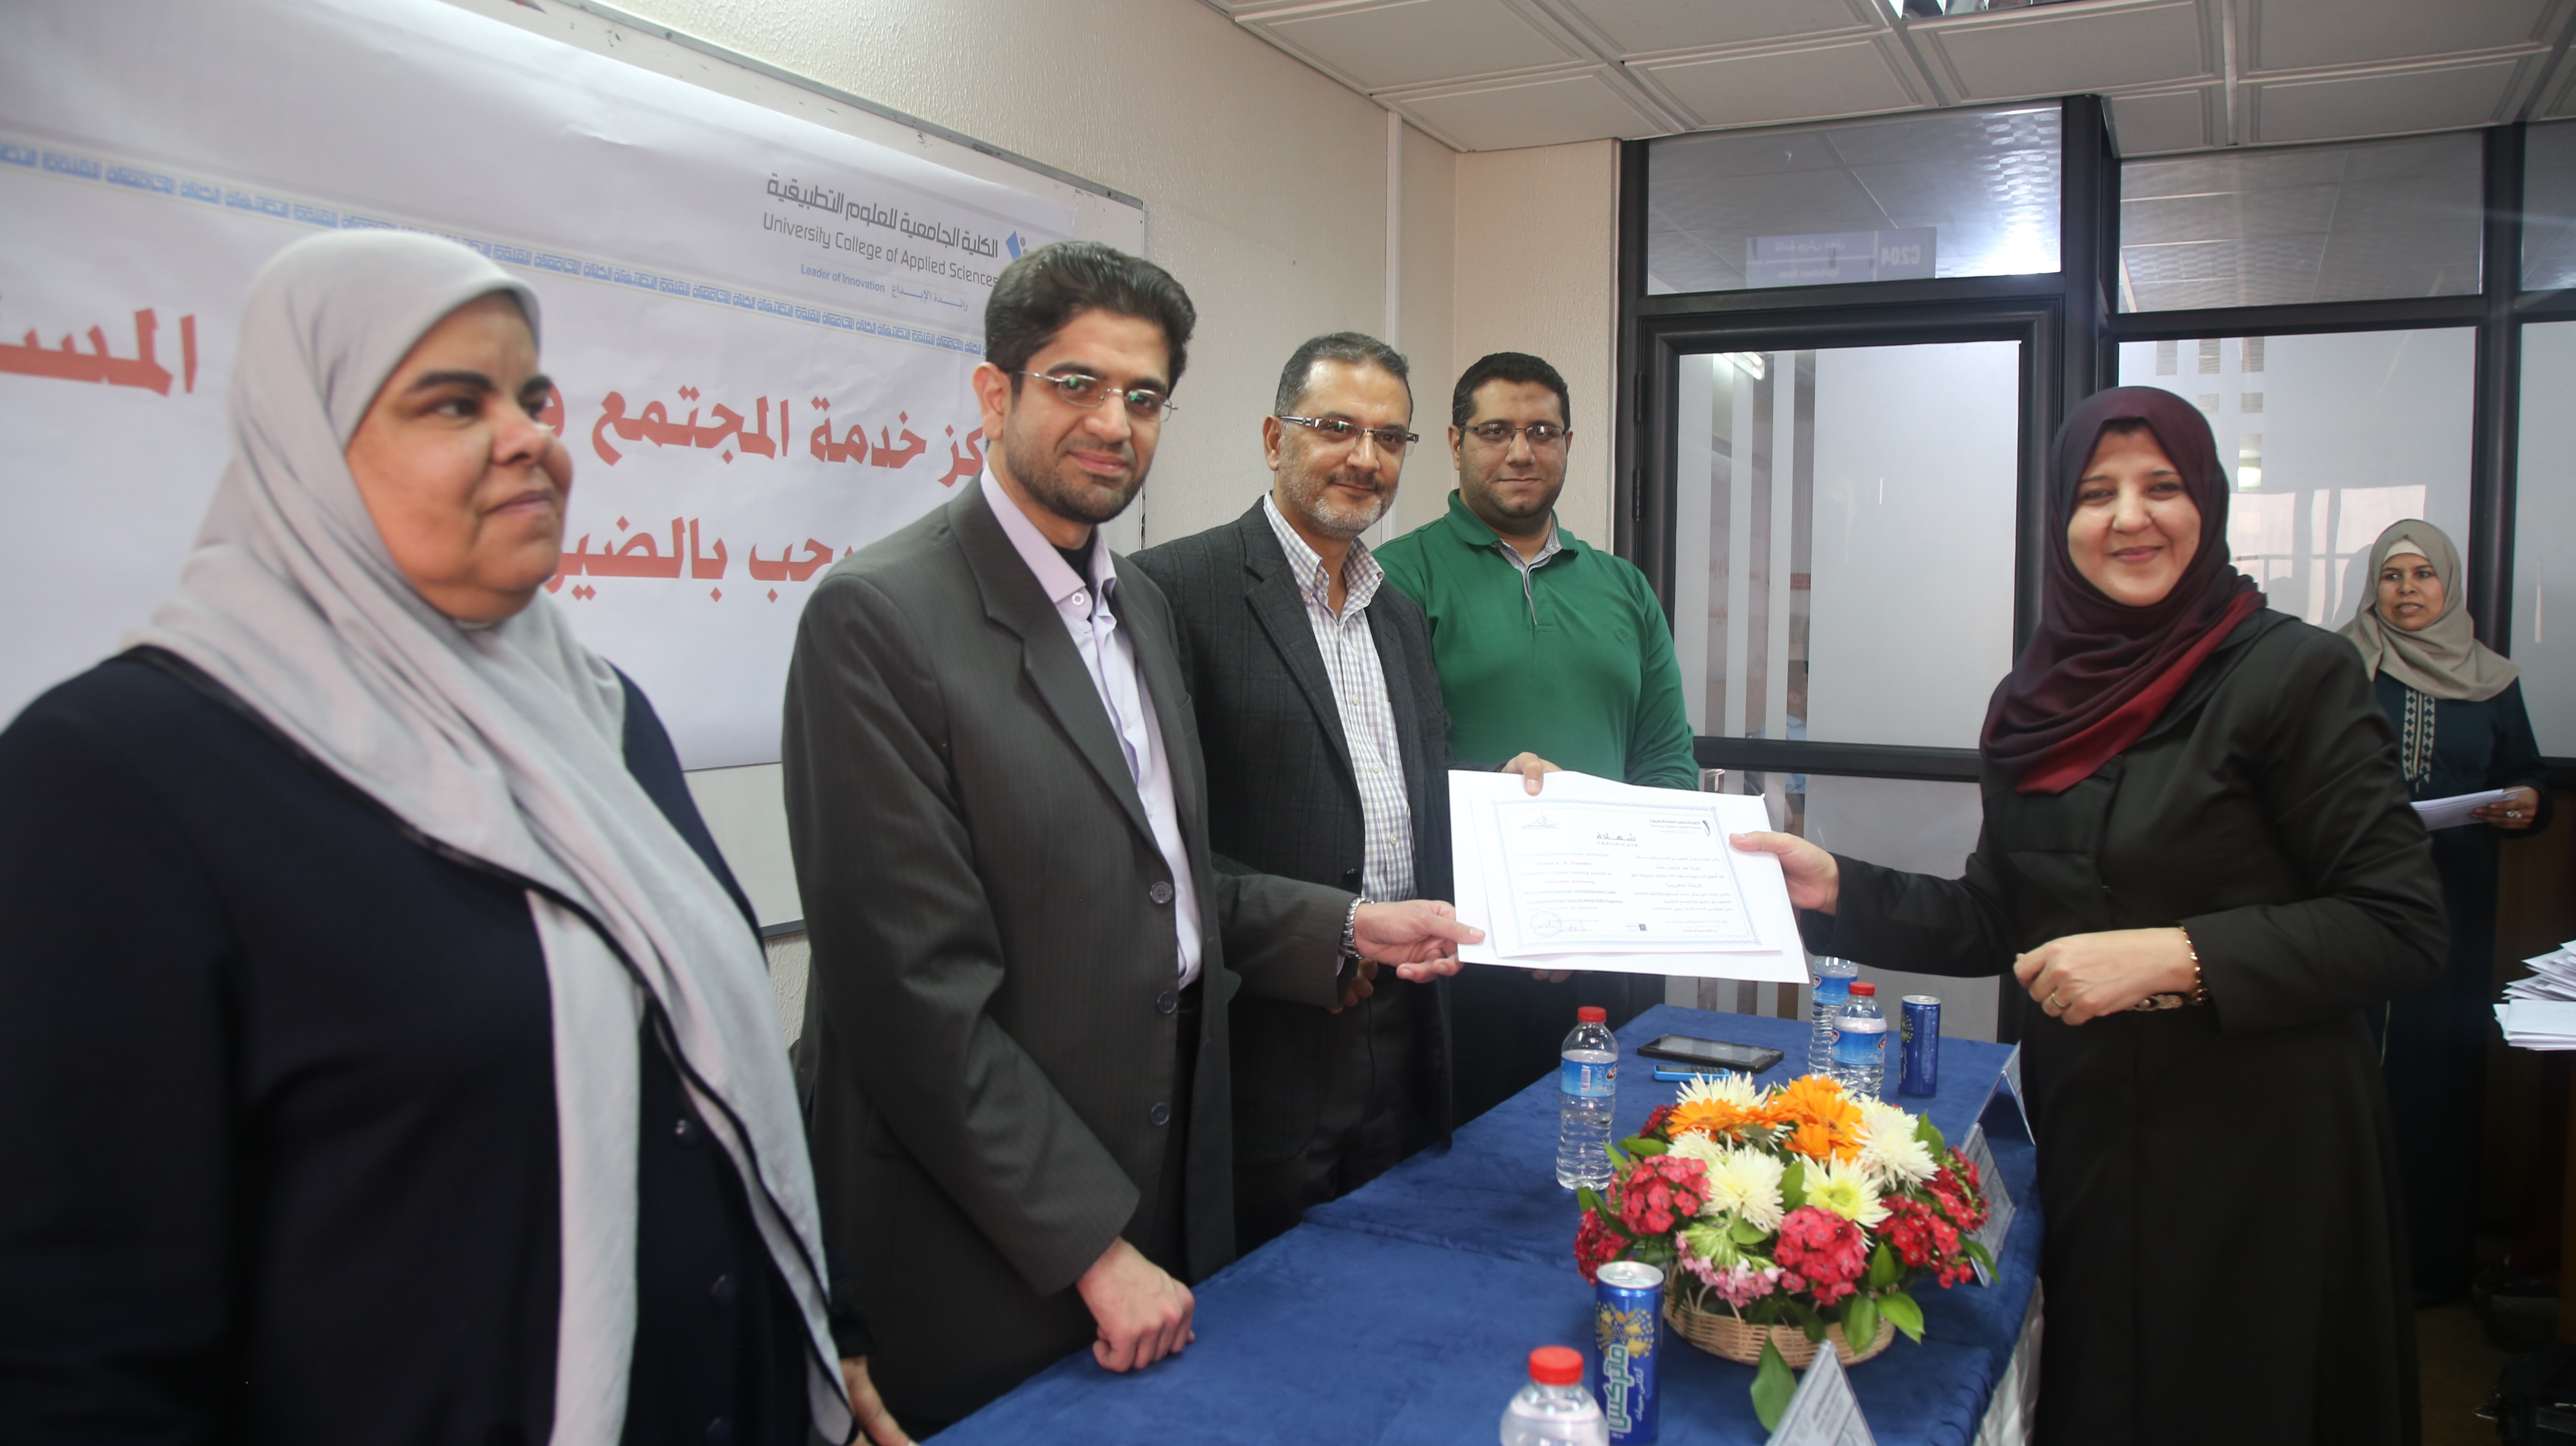 برنامج غزة يختتم دورتي الأرشفة الإلكترونية والطباعة عربي- انجليزي-4.JPG